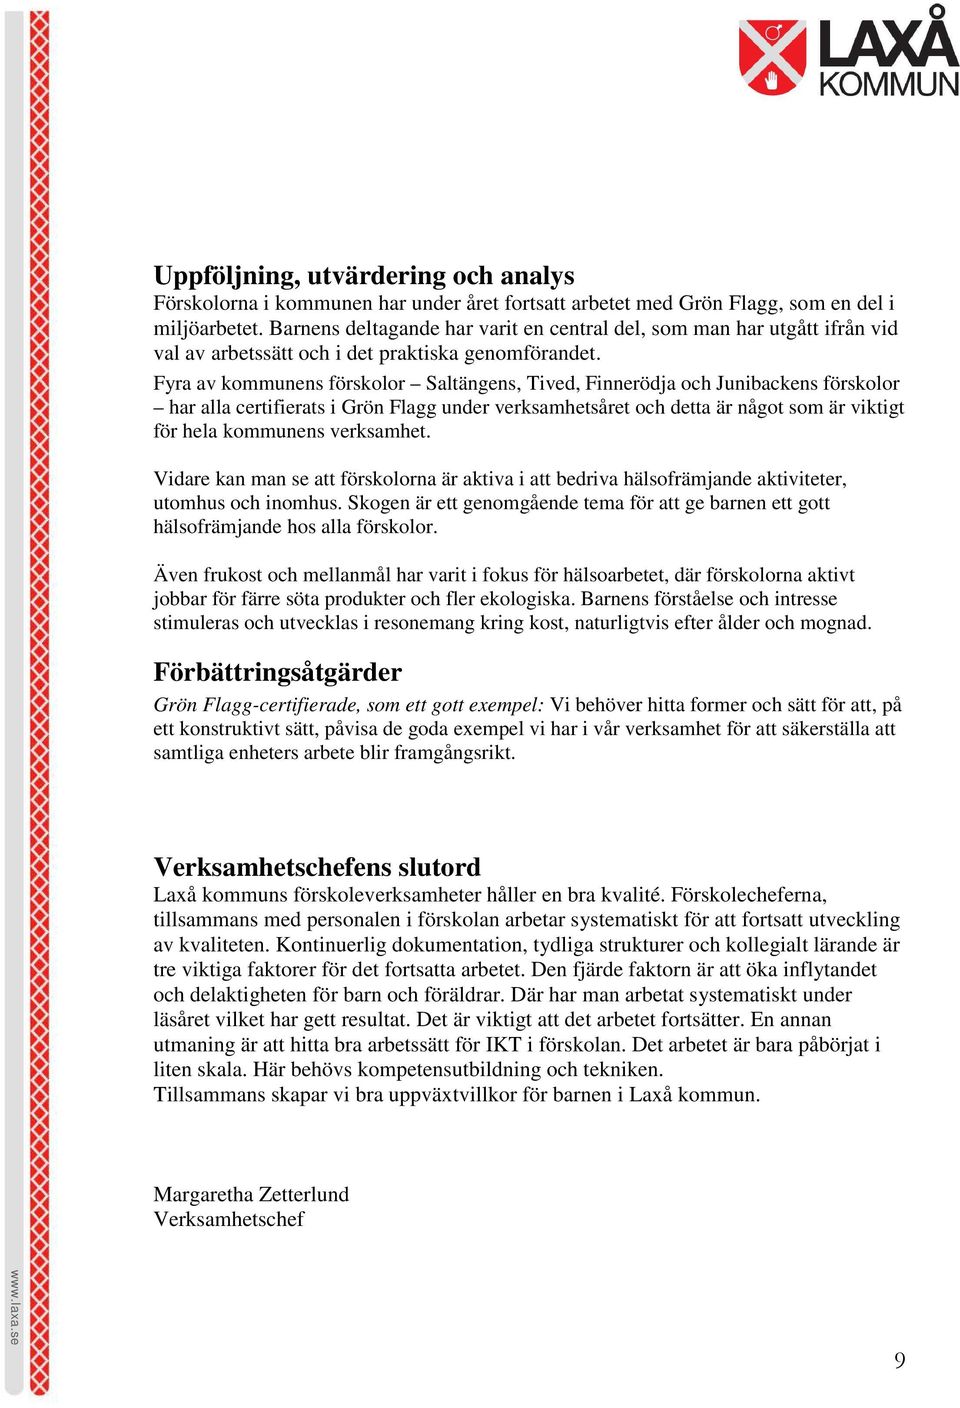 Fyra av kommunens förskolor Saltängens, Tived, Finnerödja och Junibackens förskolor har alla certifierats i Grön Flagg under verksamhetsåret och detta är något som är viktigt för hela kommunens